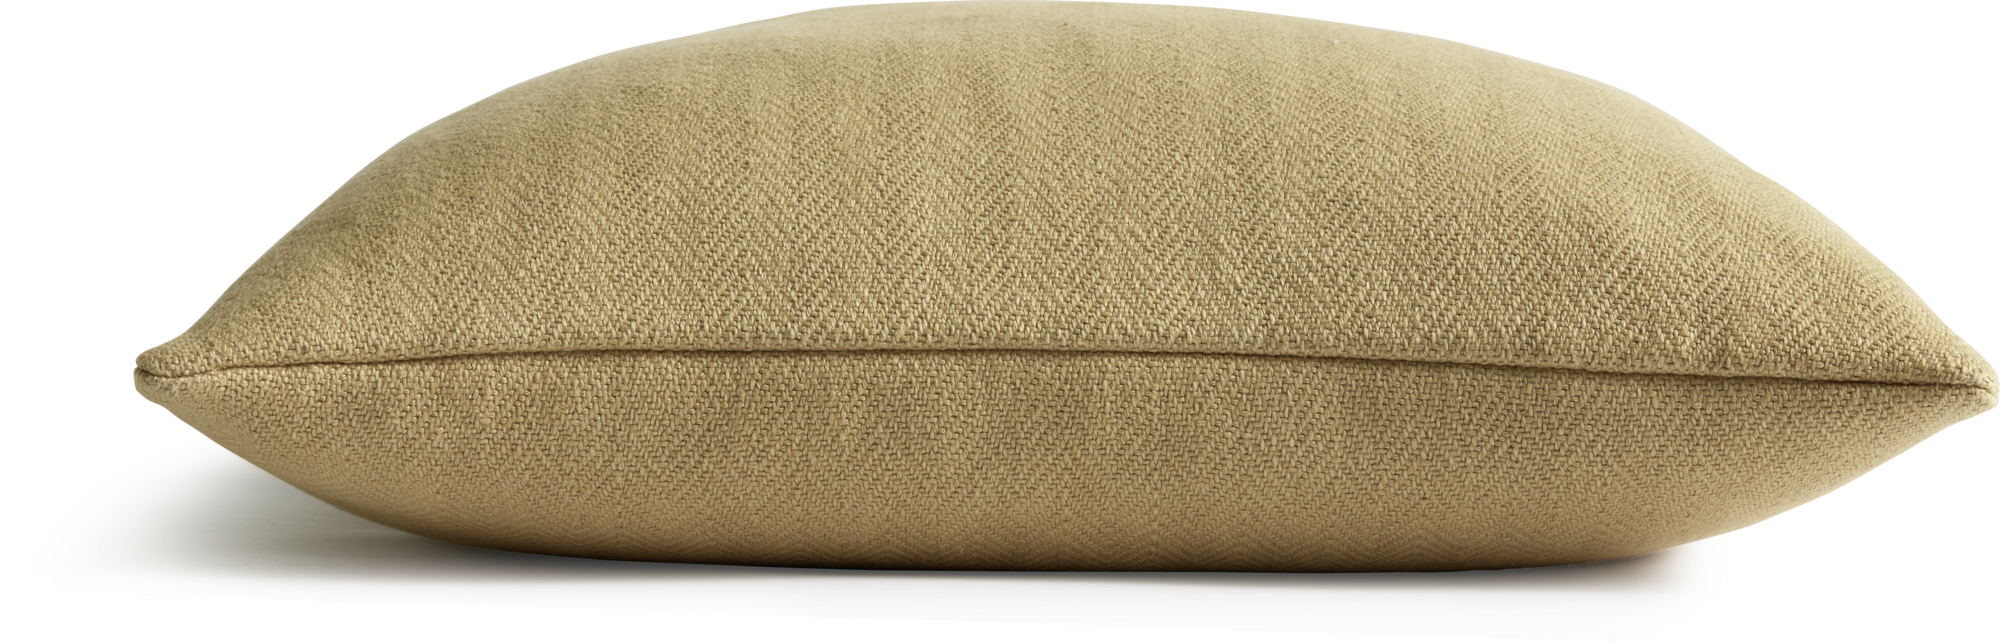 Ribeira decorative pillow